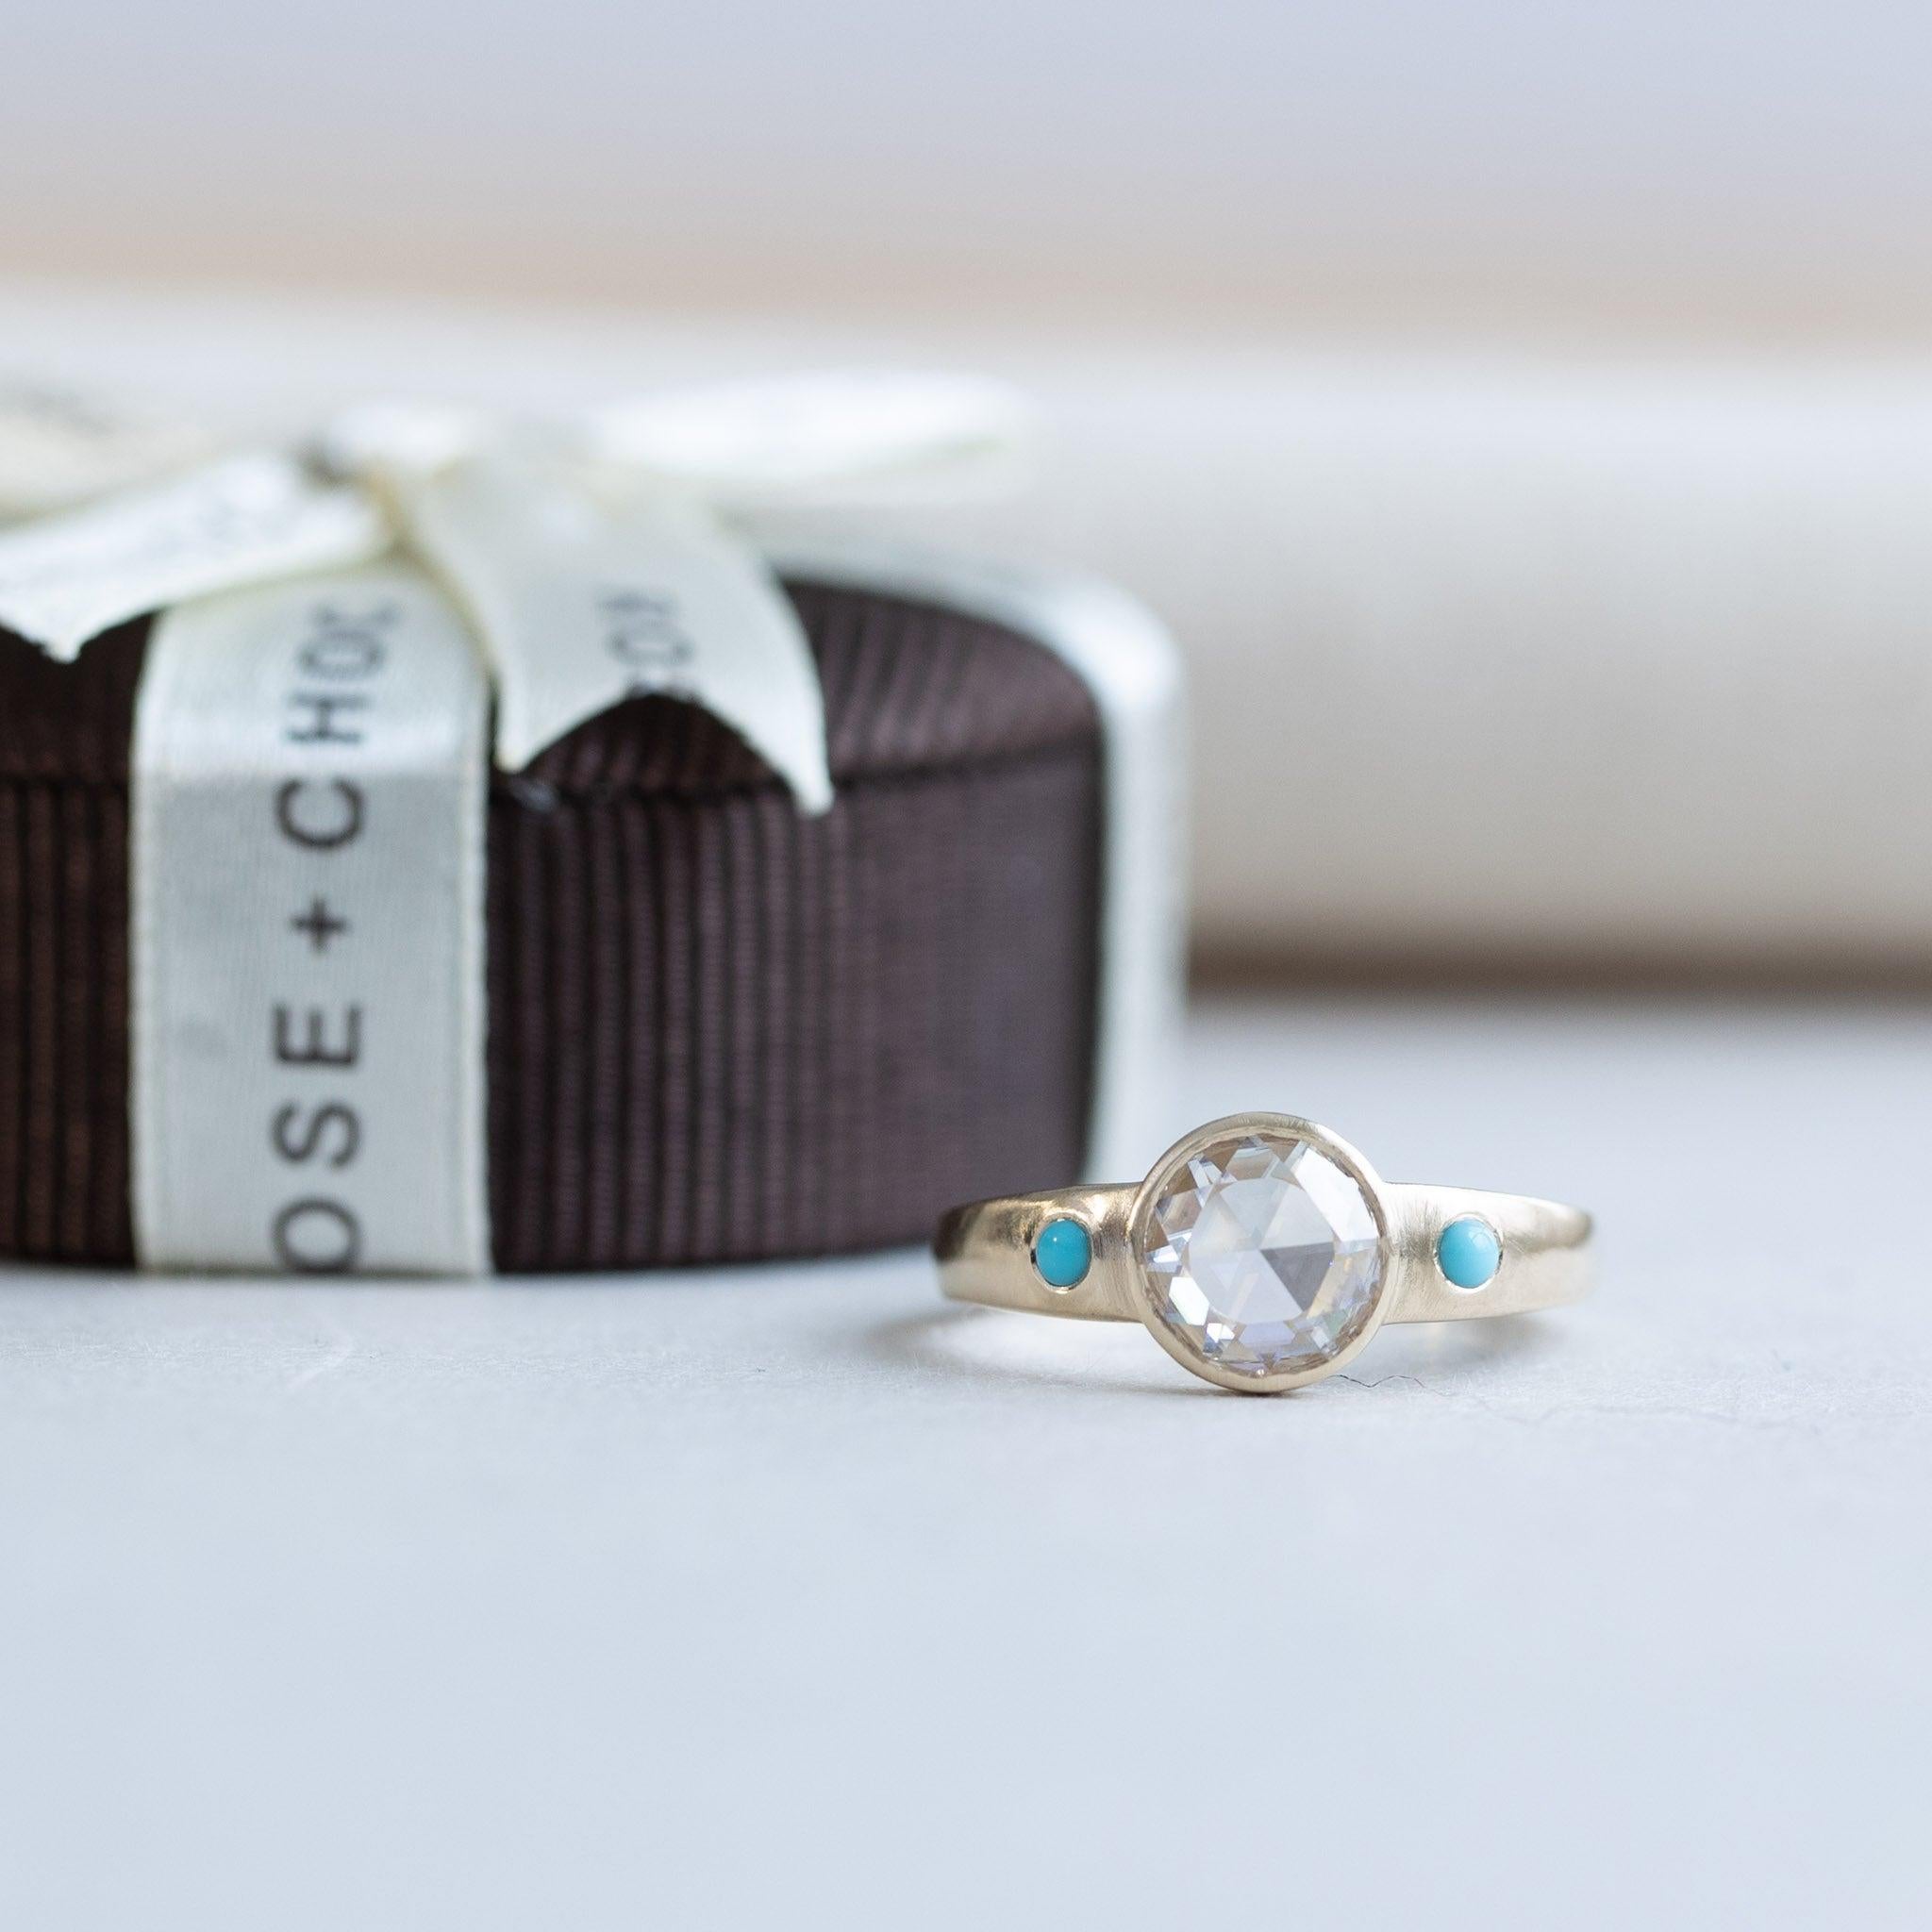 For Sale:  14 Karat Rose Cut Diamond Ring, Turquoise Ring, Yellow Gold Ring, Boho Ring 2